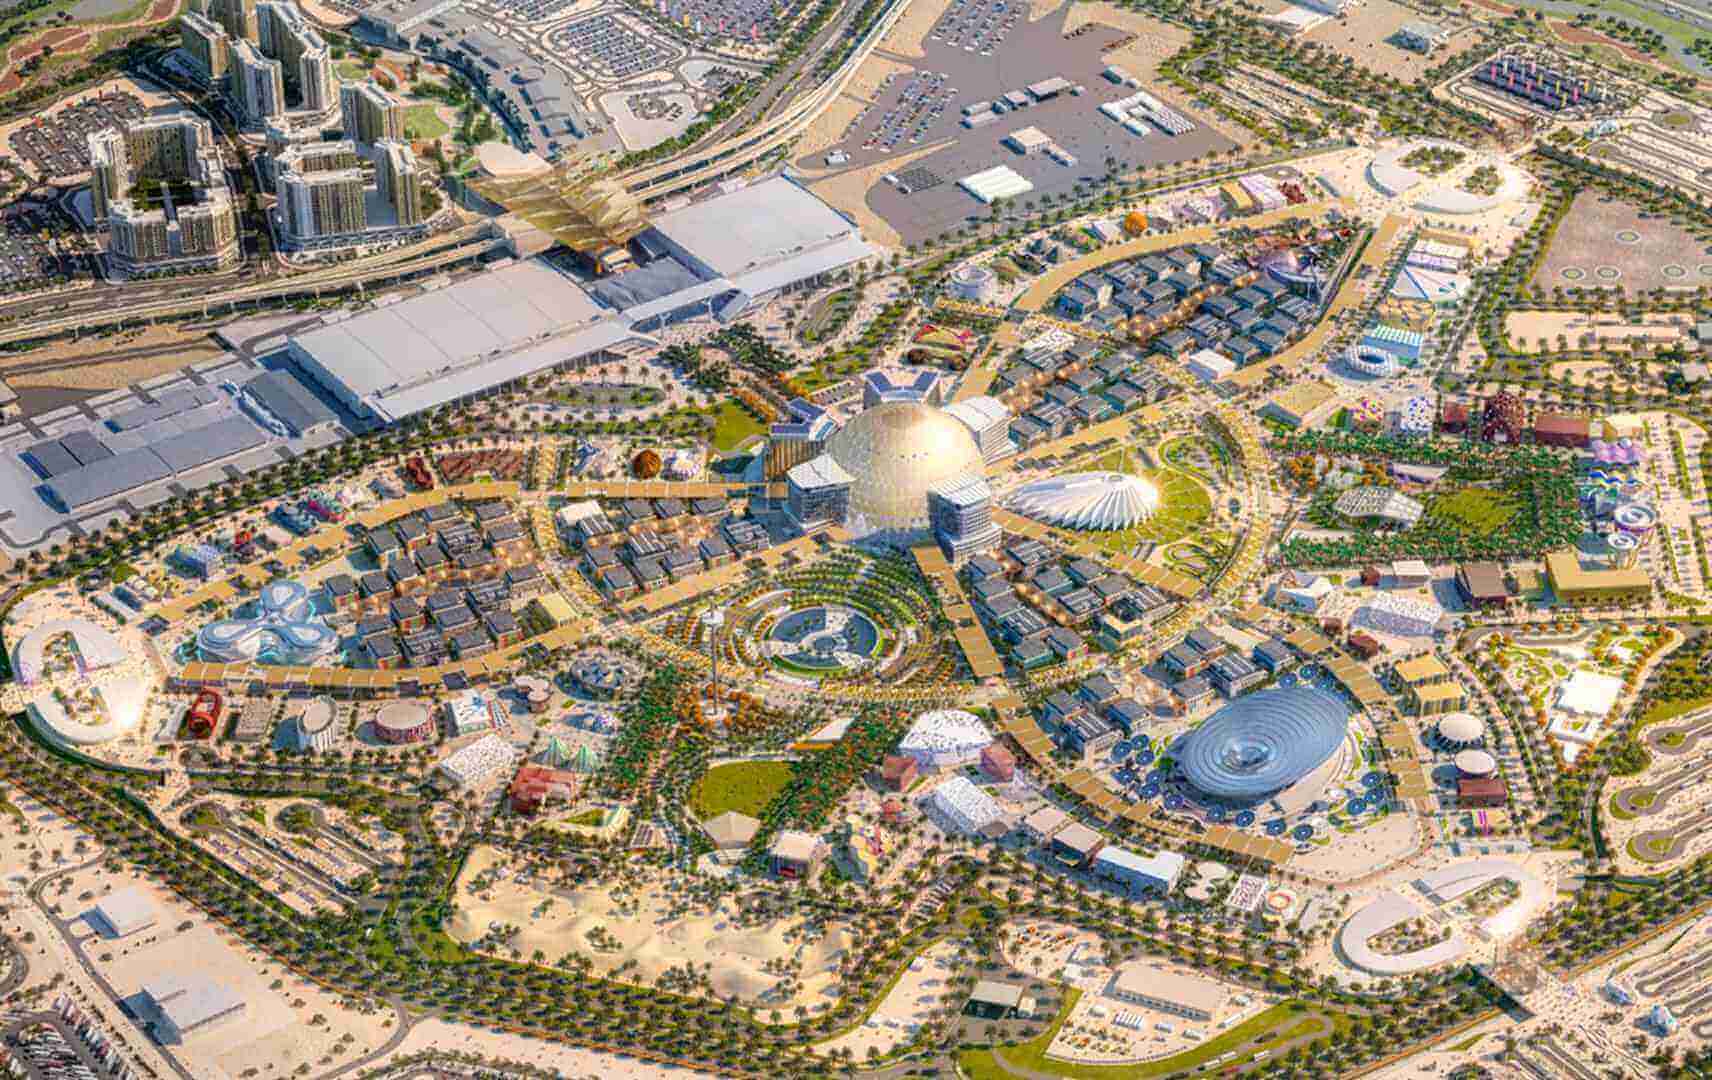 EXPO 2020 Gelände in Dubai von oben - Gebeco